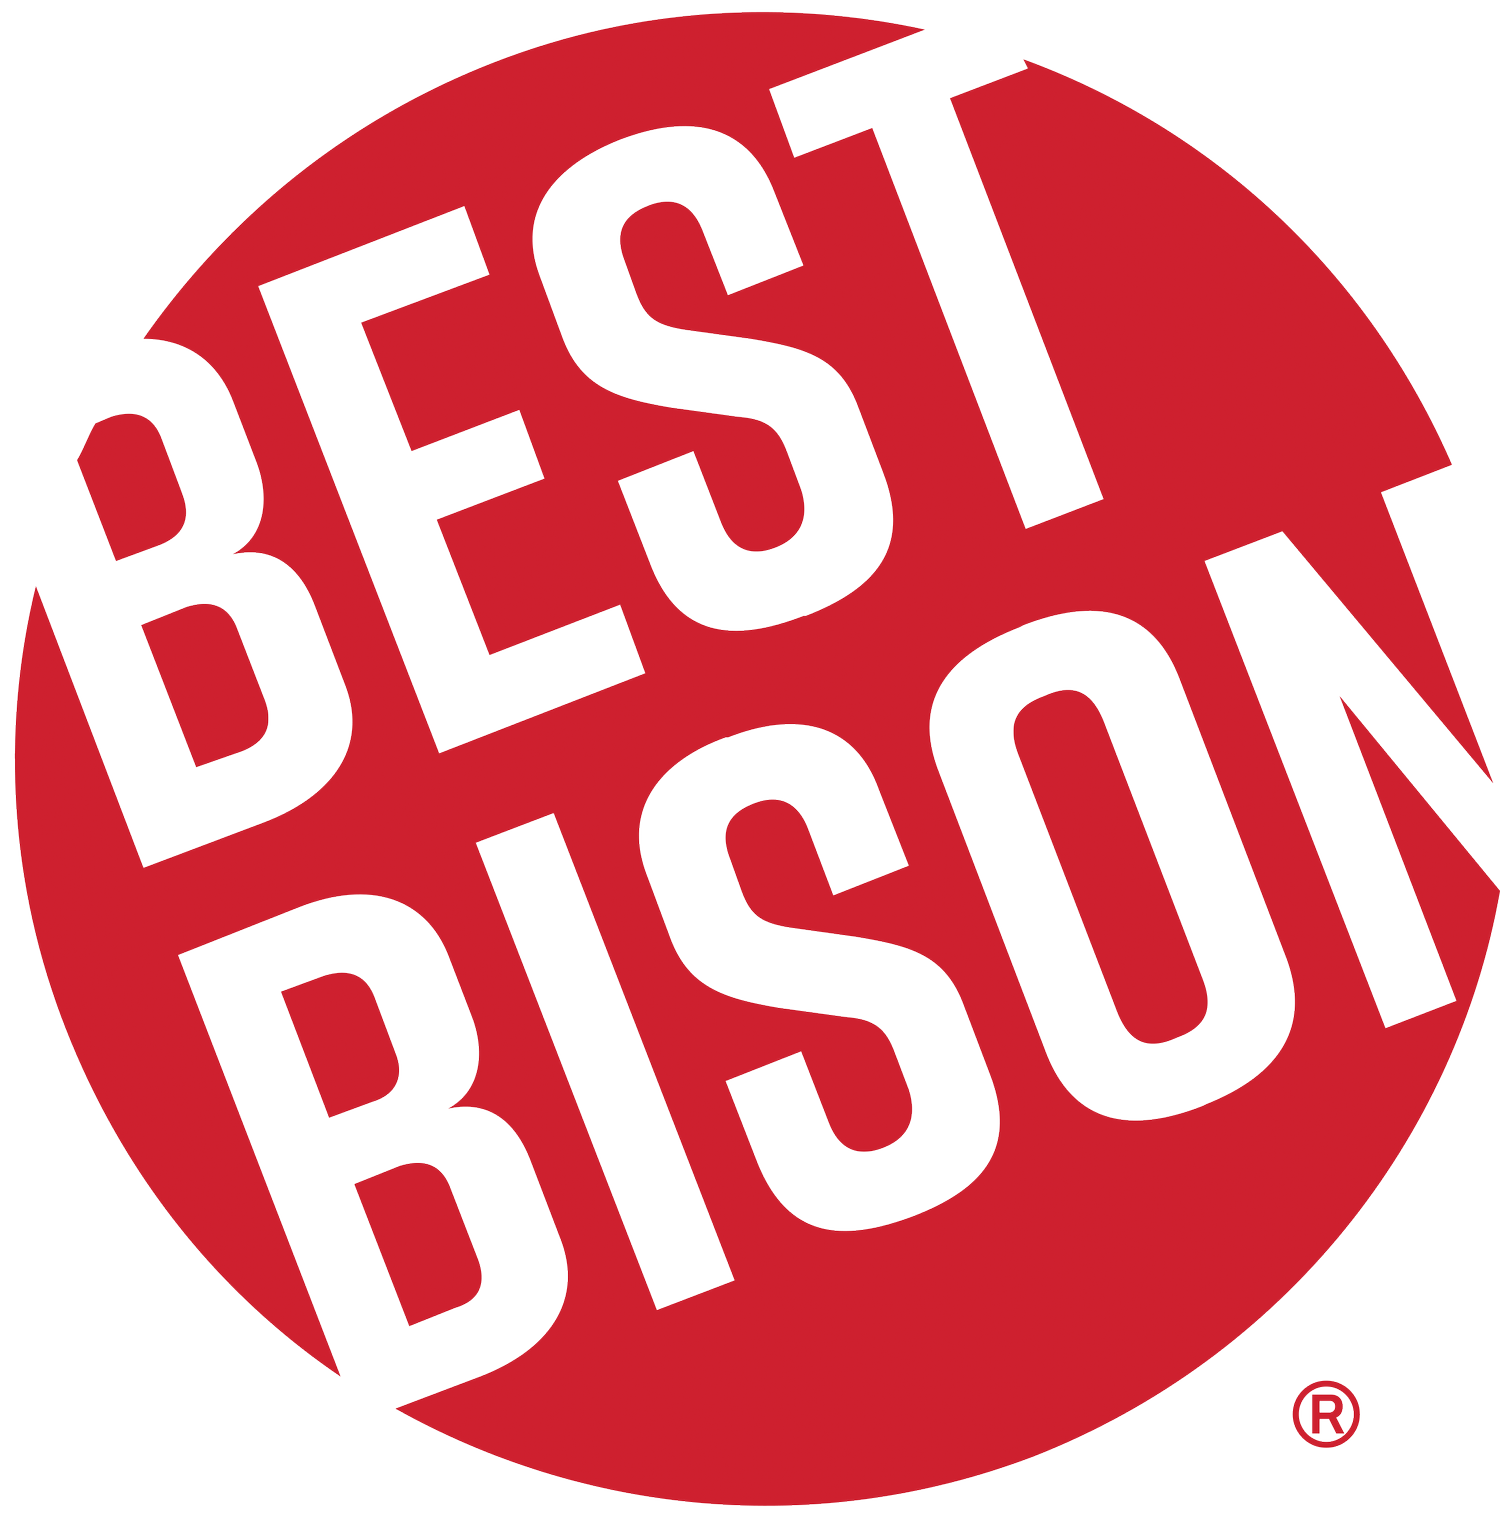 Best Bison